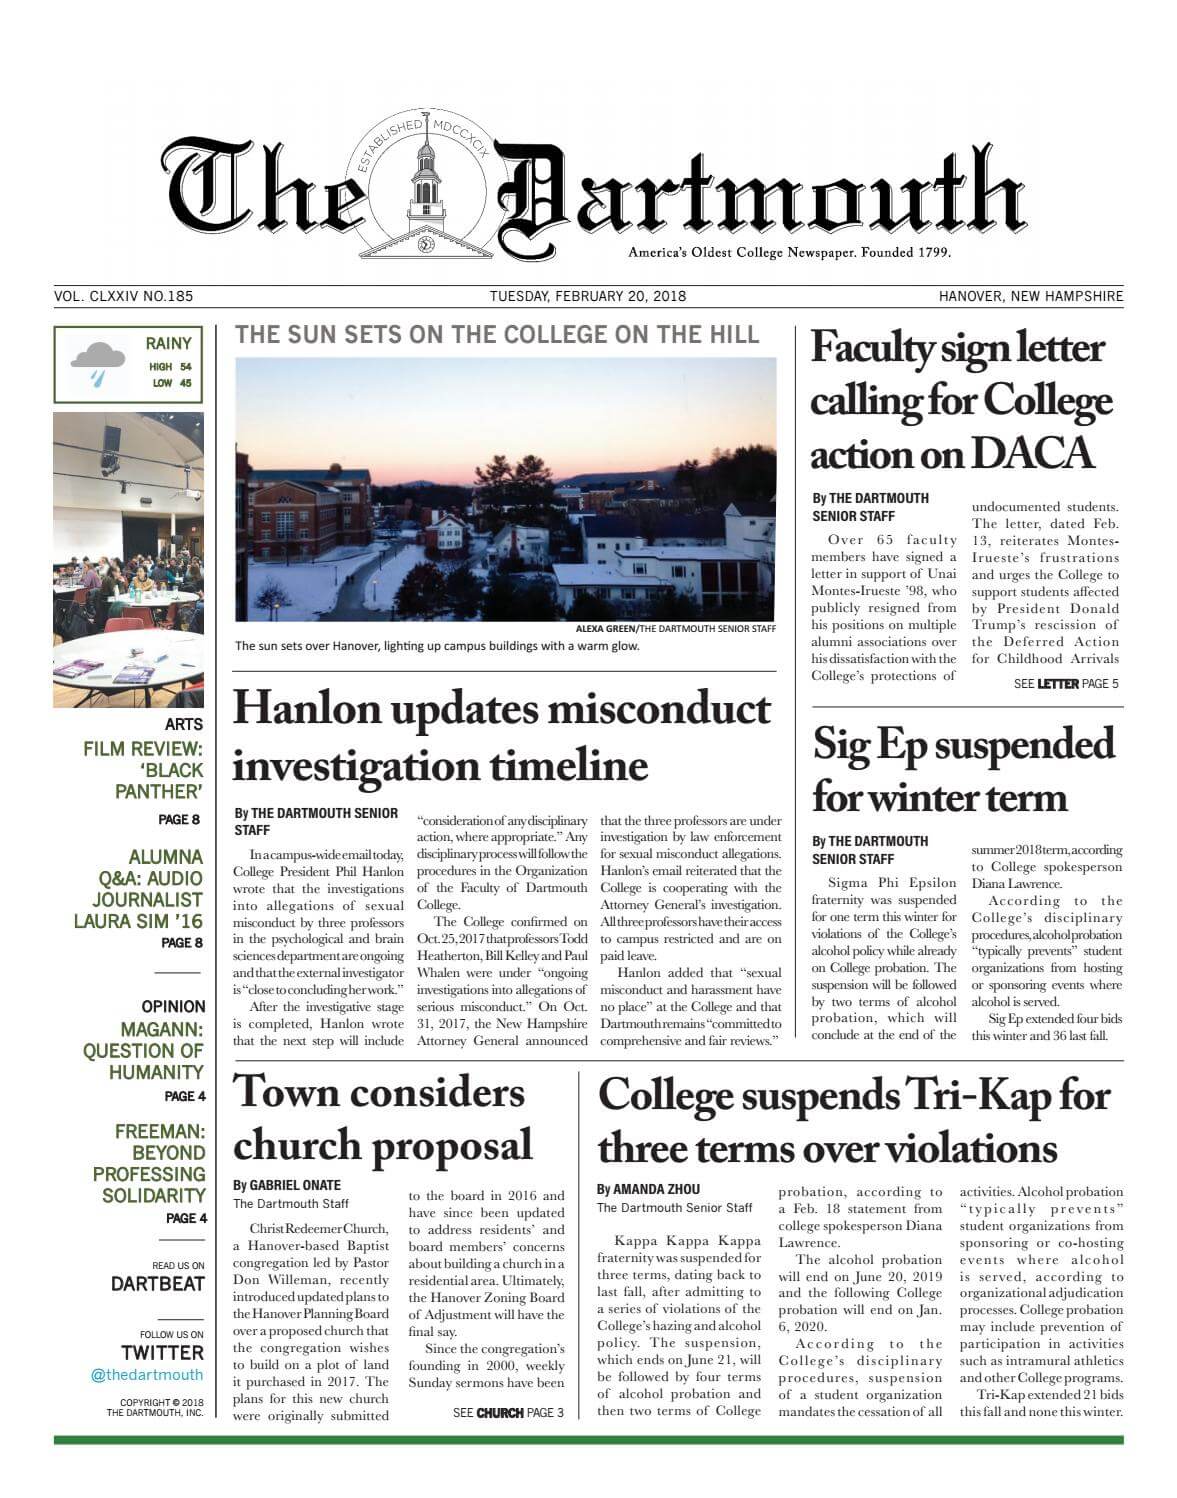 New Hampshire Newspaeprs 17 The Dartmouth